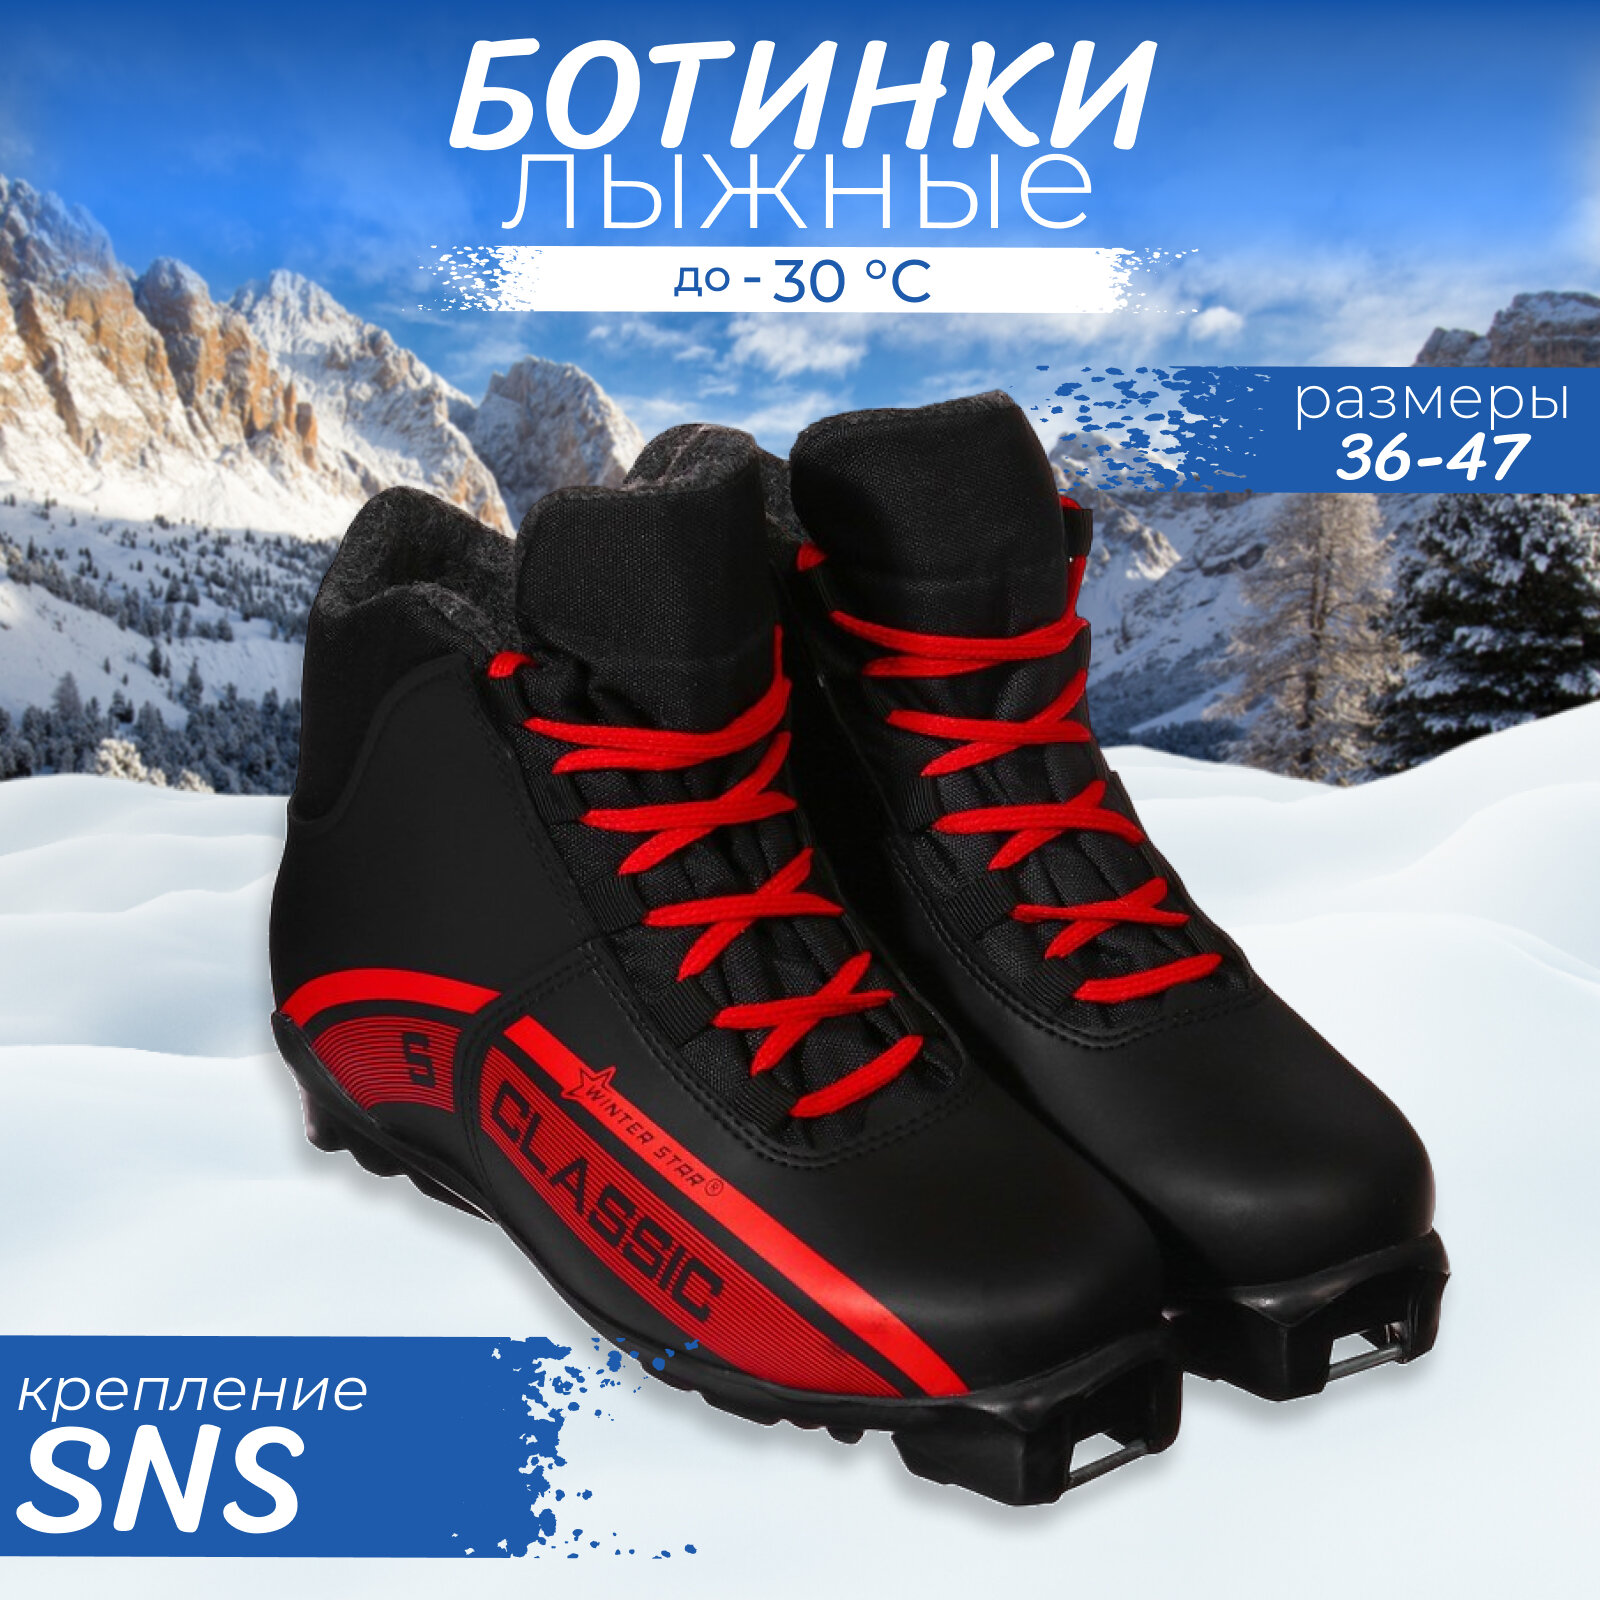 Ботинки лыжные Winter Star classic SNS искусственная кожа цвет чёрный/красный лого белый